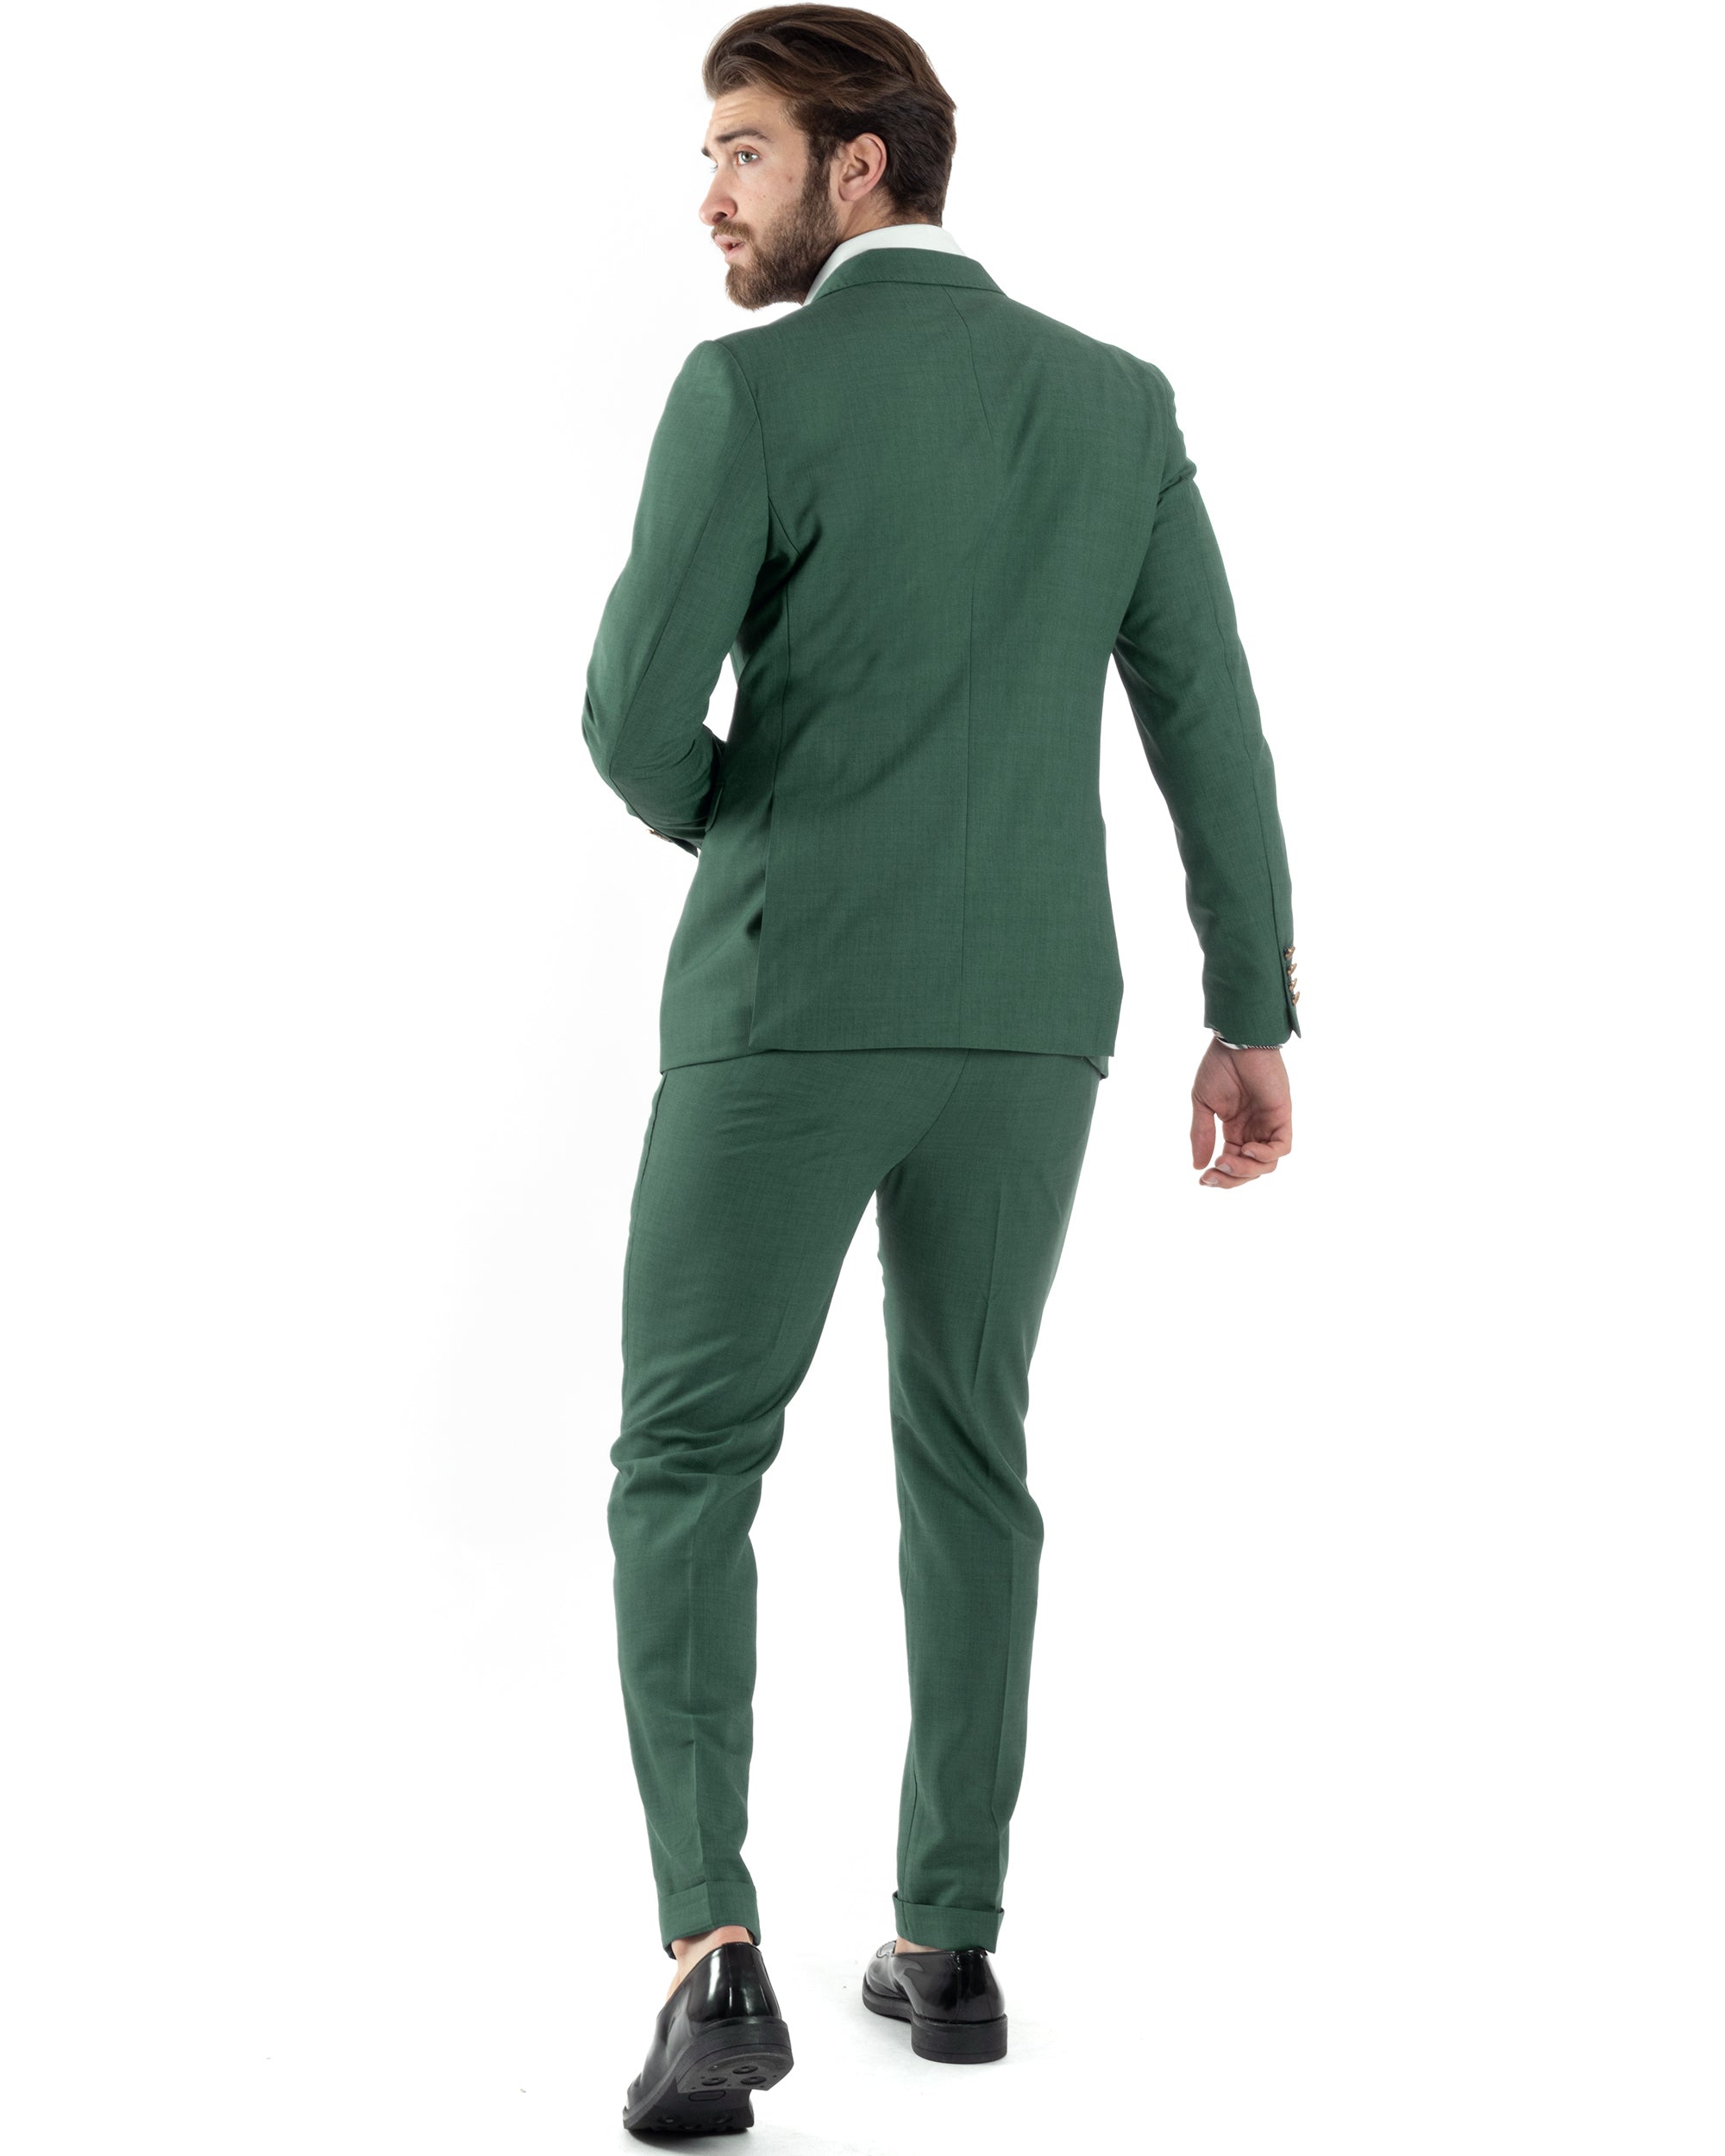 Abito Uomo Doppiopetto Vestito Completo Giacca Pantaloni Bottoni Metallo Verde Melangiato Elegante Casual GIOSAL-AE1057A